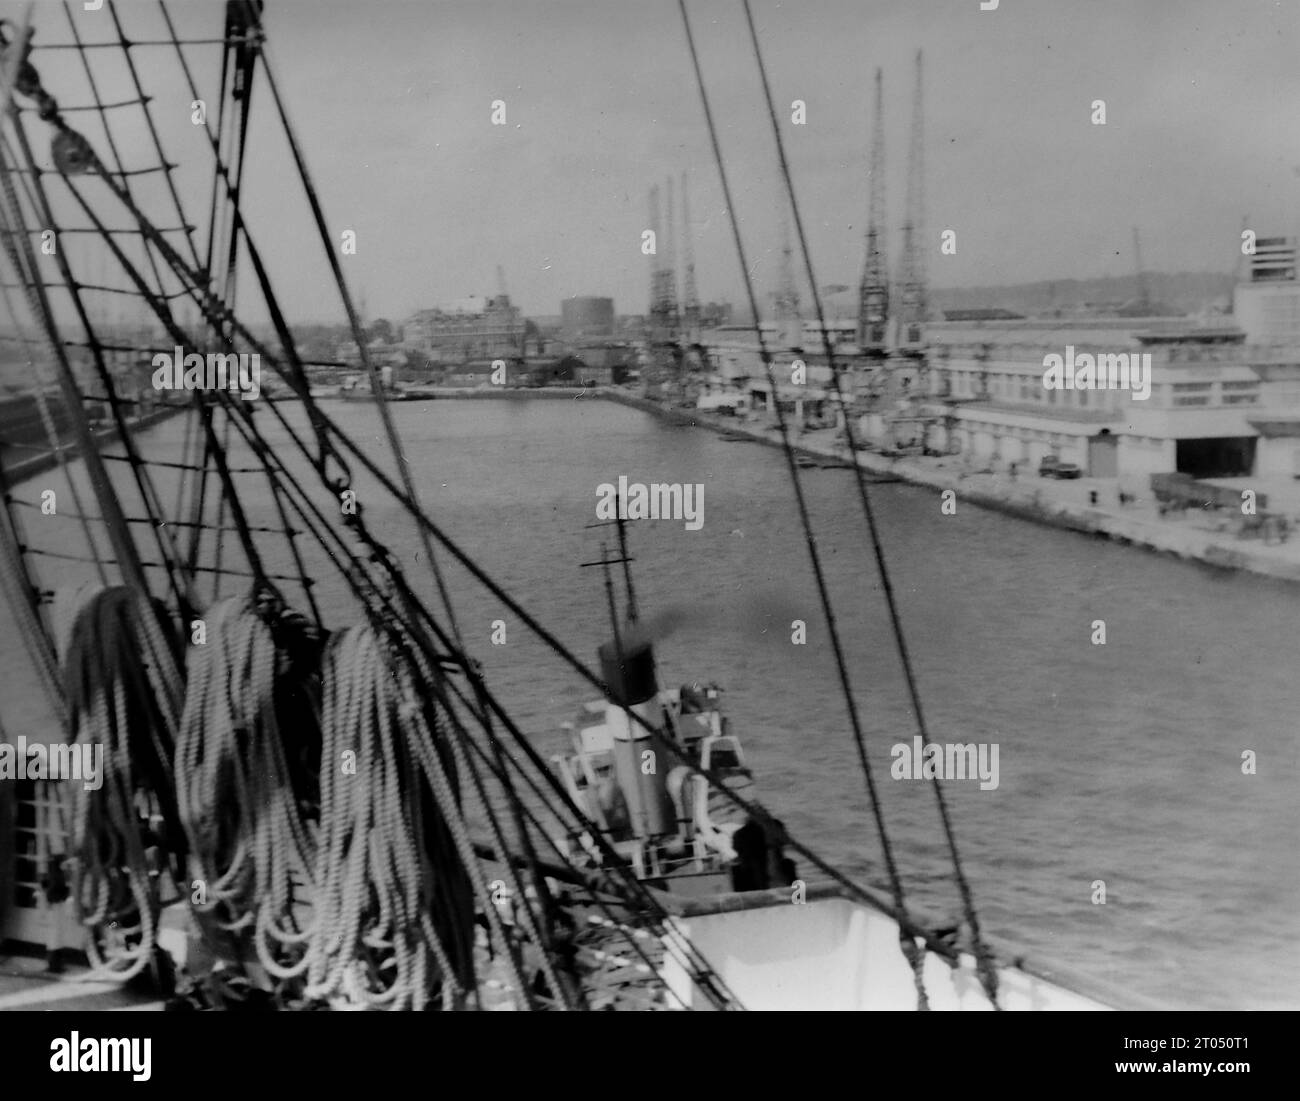 Ankunft an den Southampton Docks, von Bord der R.M.S. Queen Mary aus gesehen. Dieses Foto stammt von einem nicht zugeschriebenen persönlichen Fotoalbum einer Kreuzfahrt nach New York vom 29. Juni bis 13. August 1956. Segeln von Liverpool an Bord des Cunard-Schiffes M.V. Britannic und Rückfahrt von New York nach Southampton an Bord des Cunard-Schiffes R.M.S. Queen Mary. Die durchschnittliche Größe der Originalfotos betrug 4 x 3 Zoll. Stockfoto